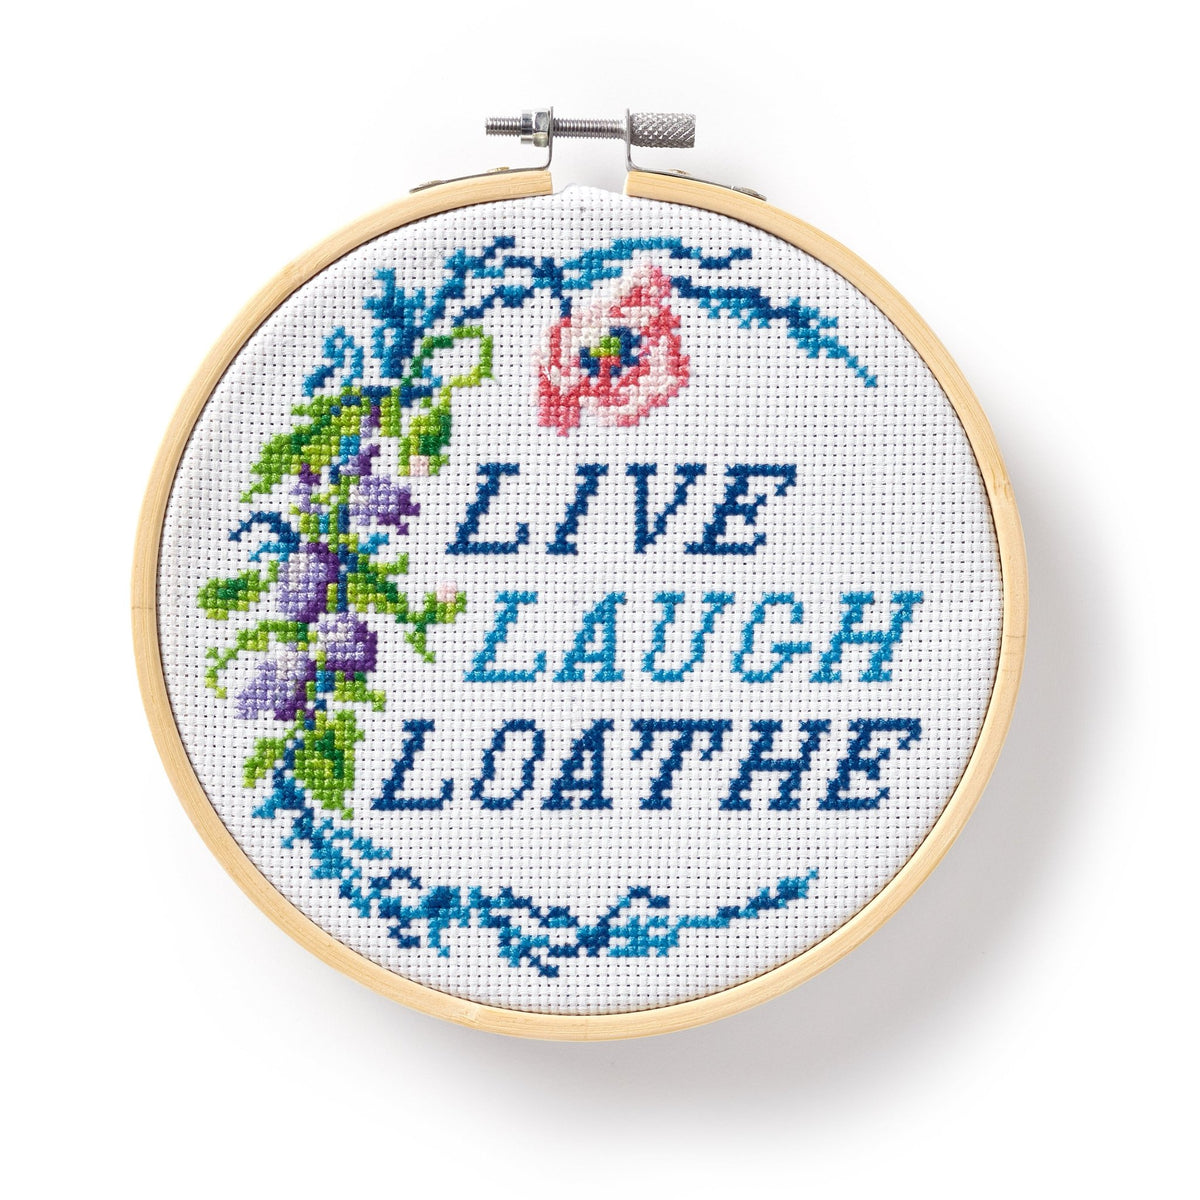 Live Laugh Loathe Cross Stitch Kit - Brass Monkey - 9780735377004